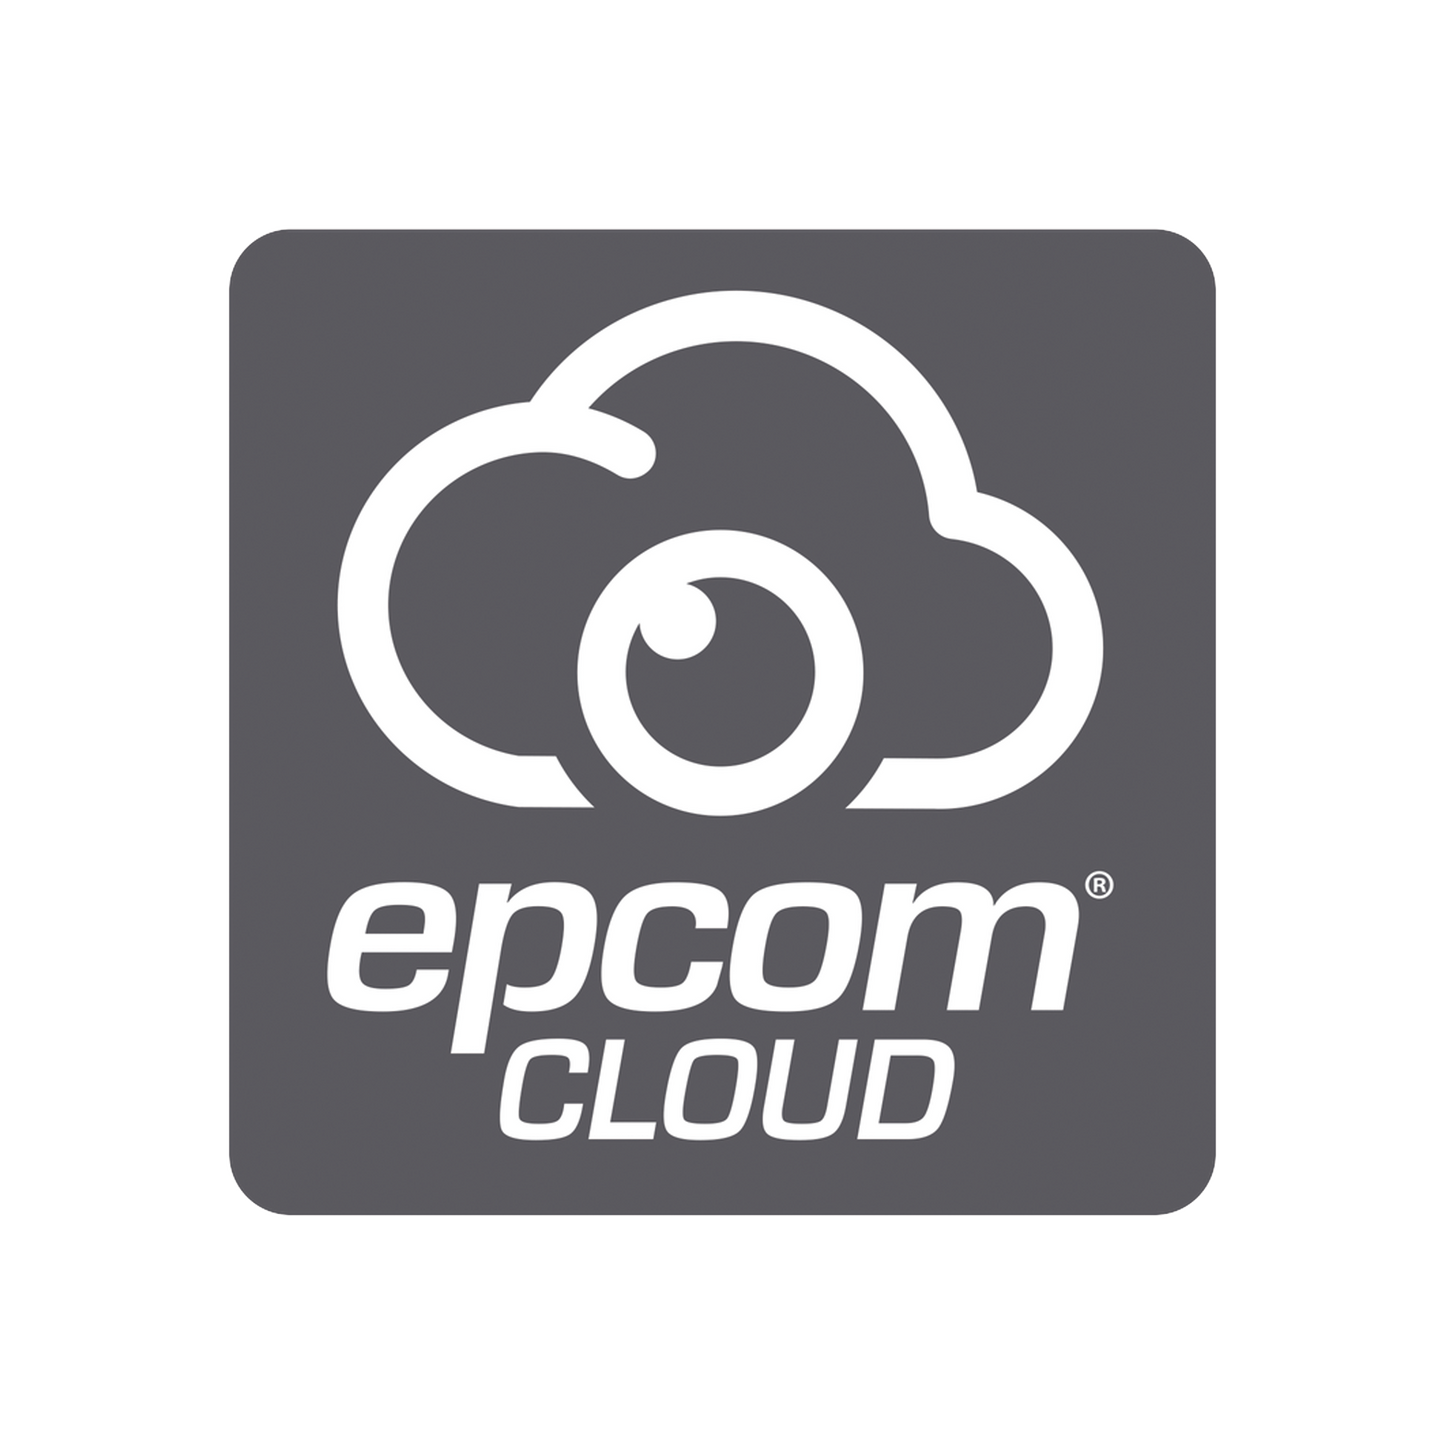 Suscripción Anual Epcom Cloud / Grabación en la nube para 1 canal de video a 8MP con 7 días de retención / Grabación por detección de movimiento